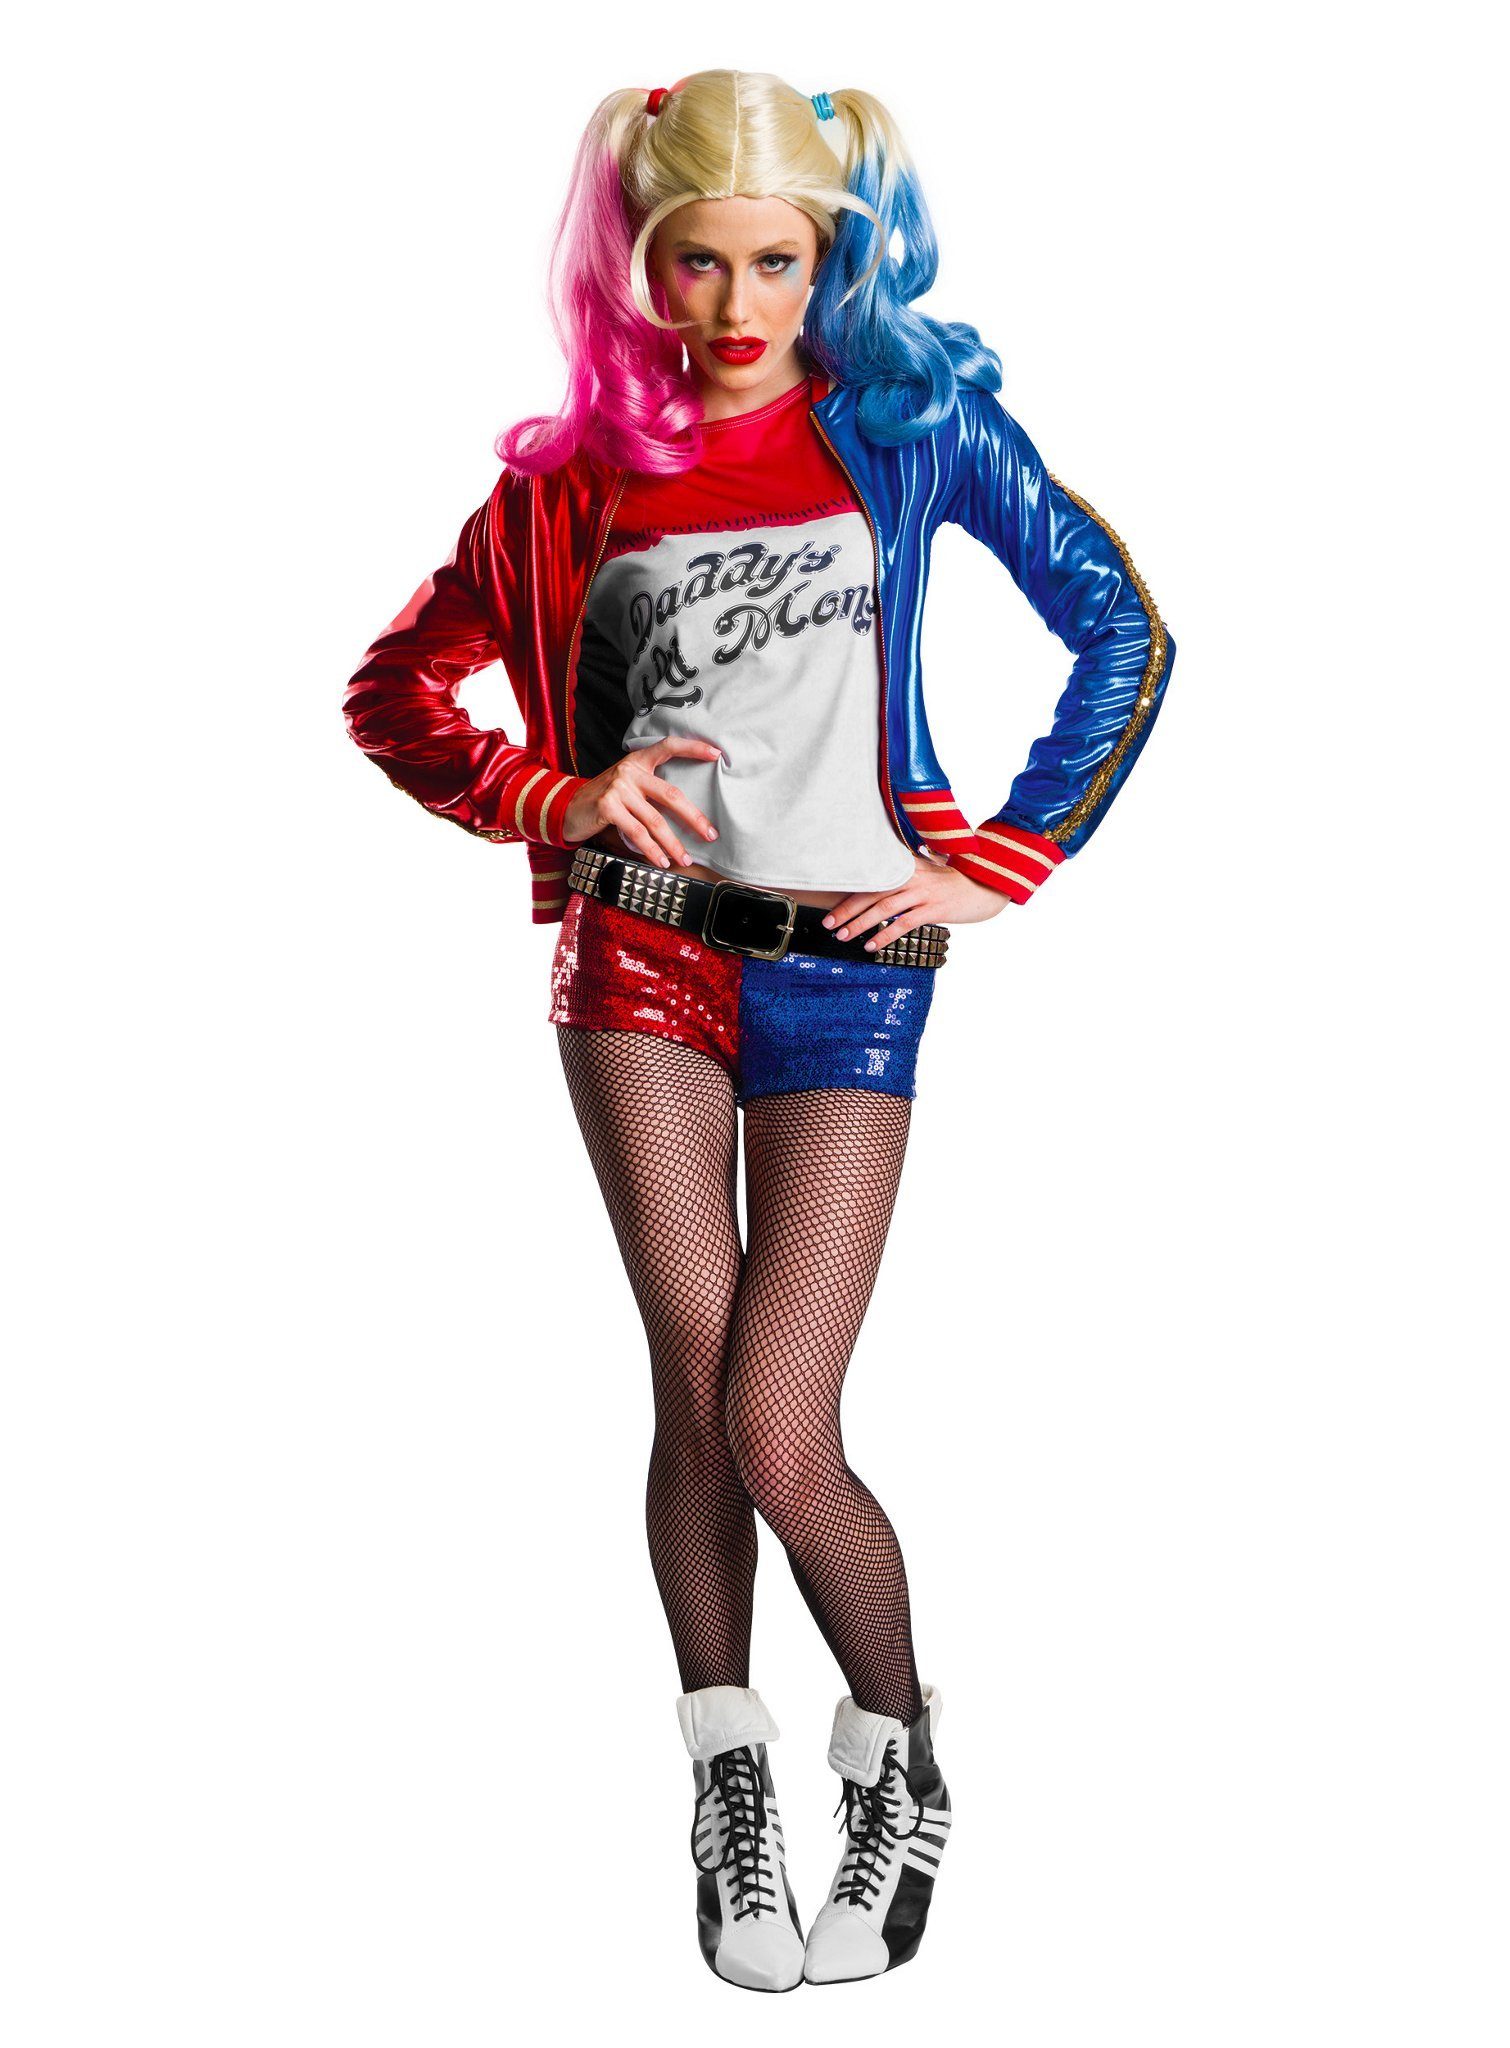 Charades Kostüm Harley Quinn Premium, Hochwertiges Cosplay-Kostüm für schlagfertige Fans von Suicide Squad